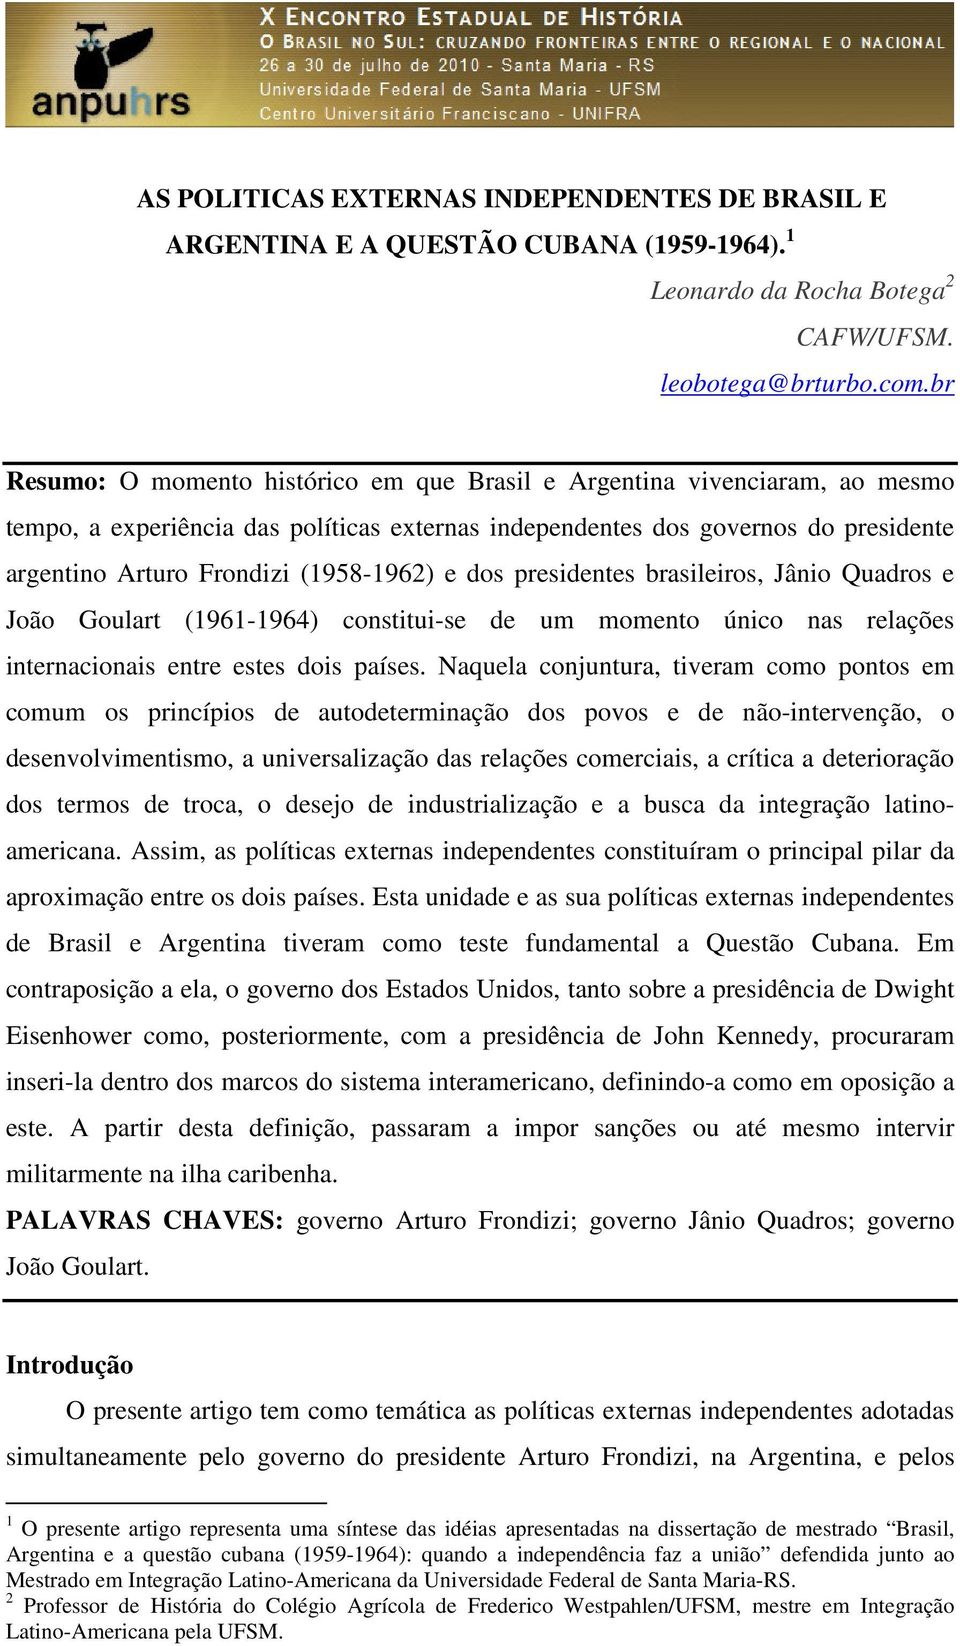 (1958-1962) e dos presidentes brasileiros, Jânio Quadros e João Goulart (1961-1964) constitui-se de um momento único nas relações internacionais entre estes dois países.